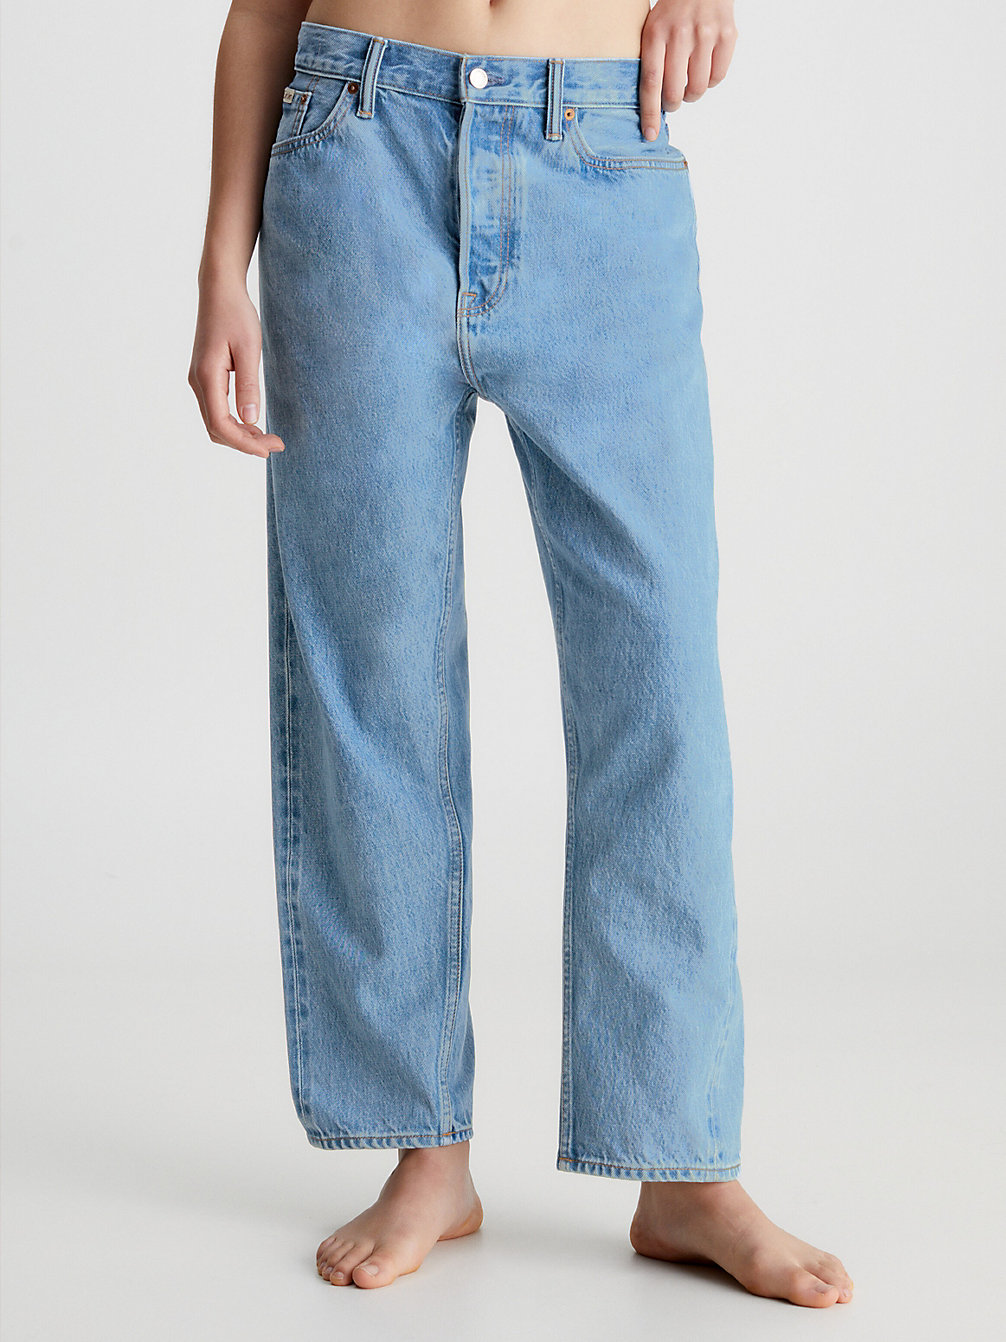 COASTAL BLUE > Unisex Relaxed Jeans – CK Standards > undefined Herren - Calvin Klein